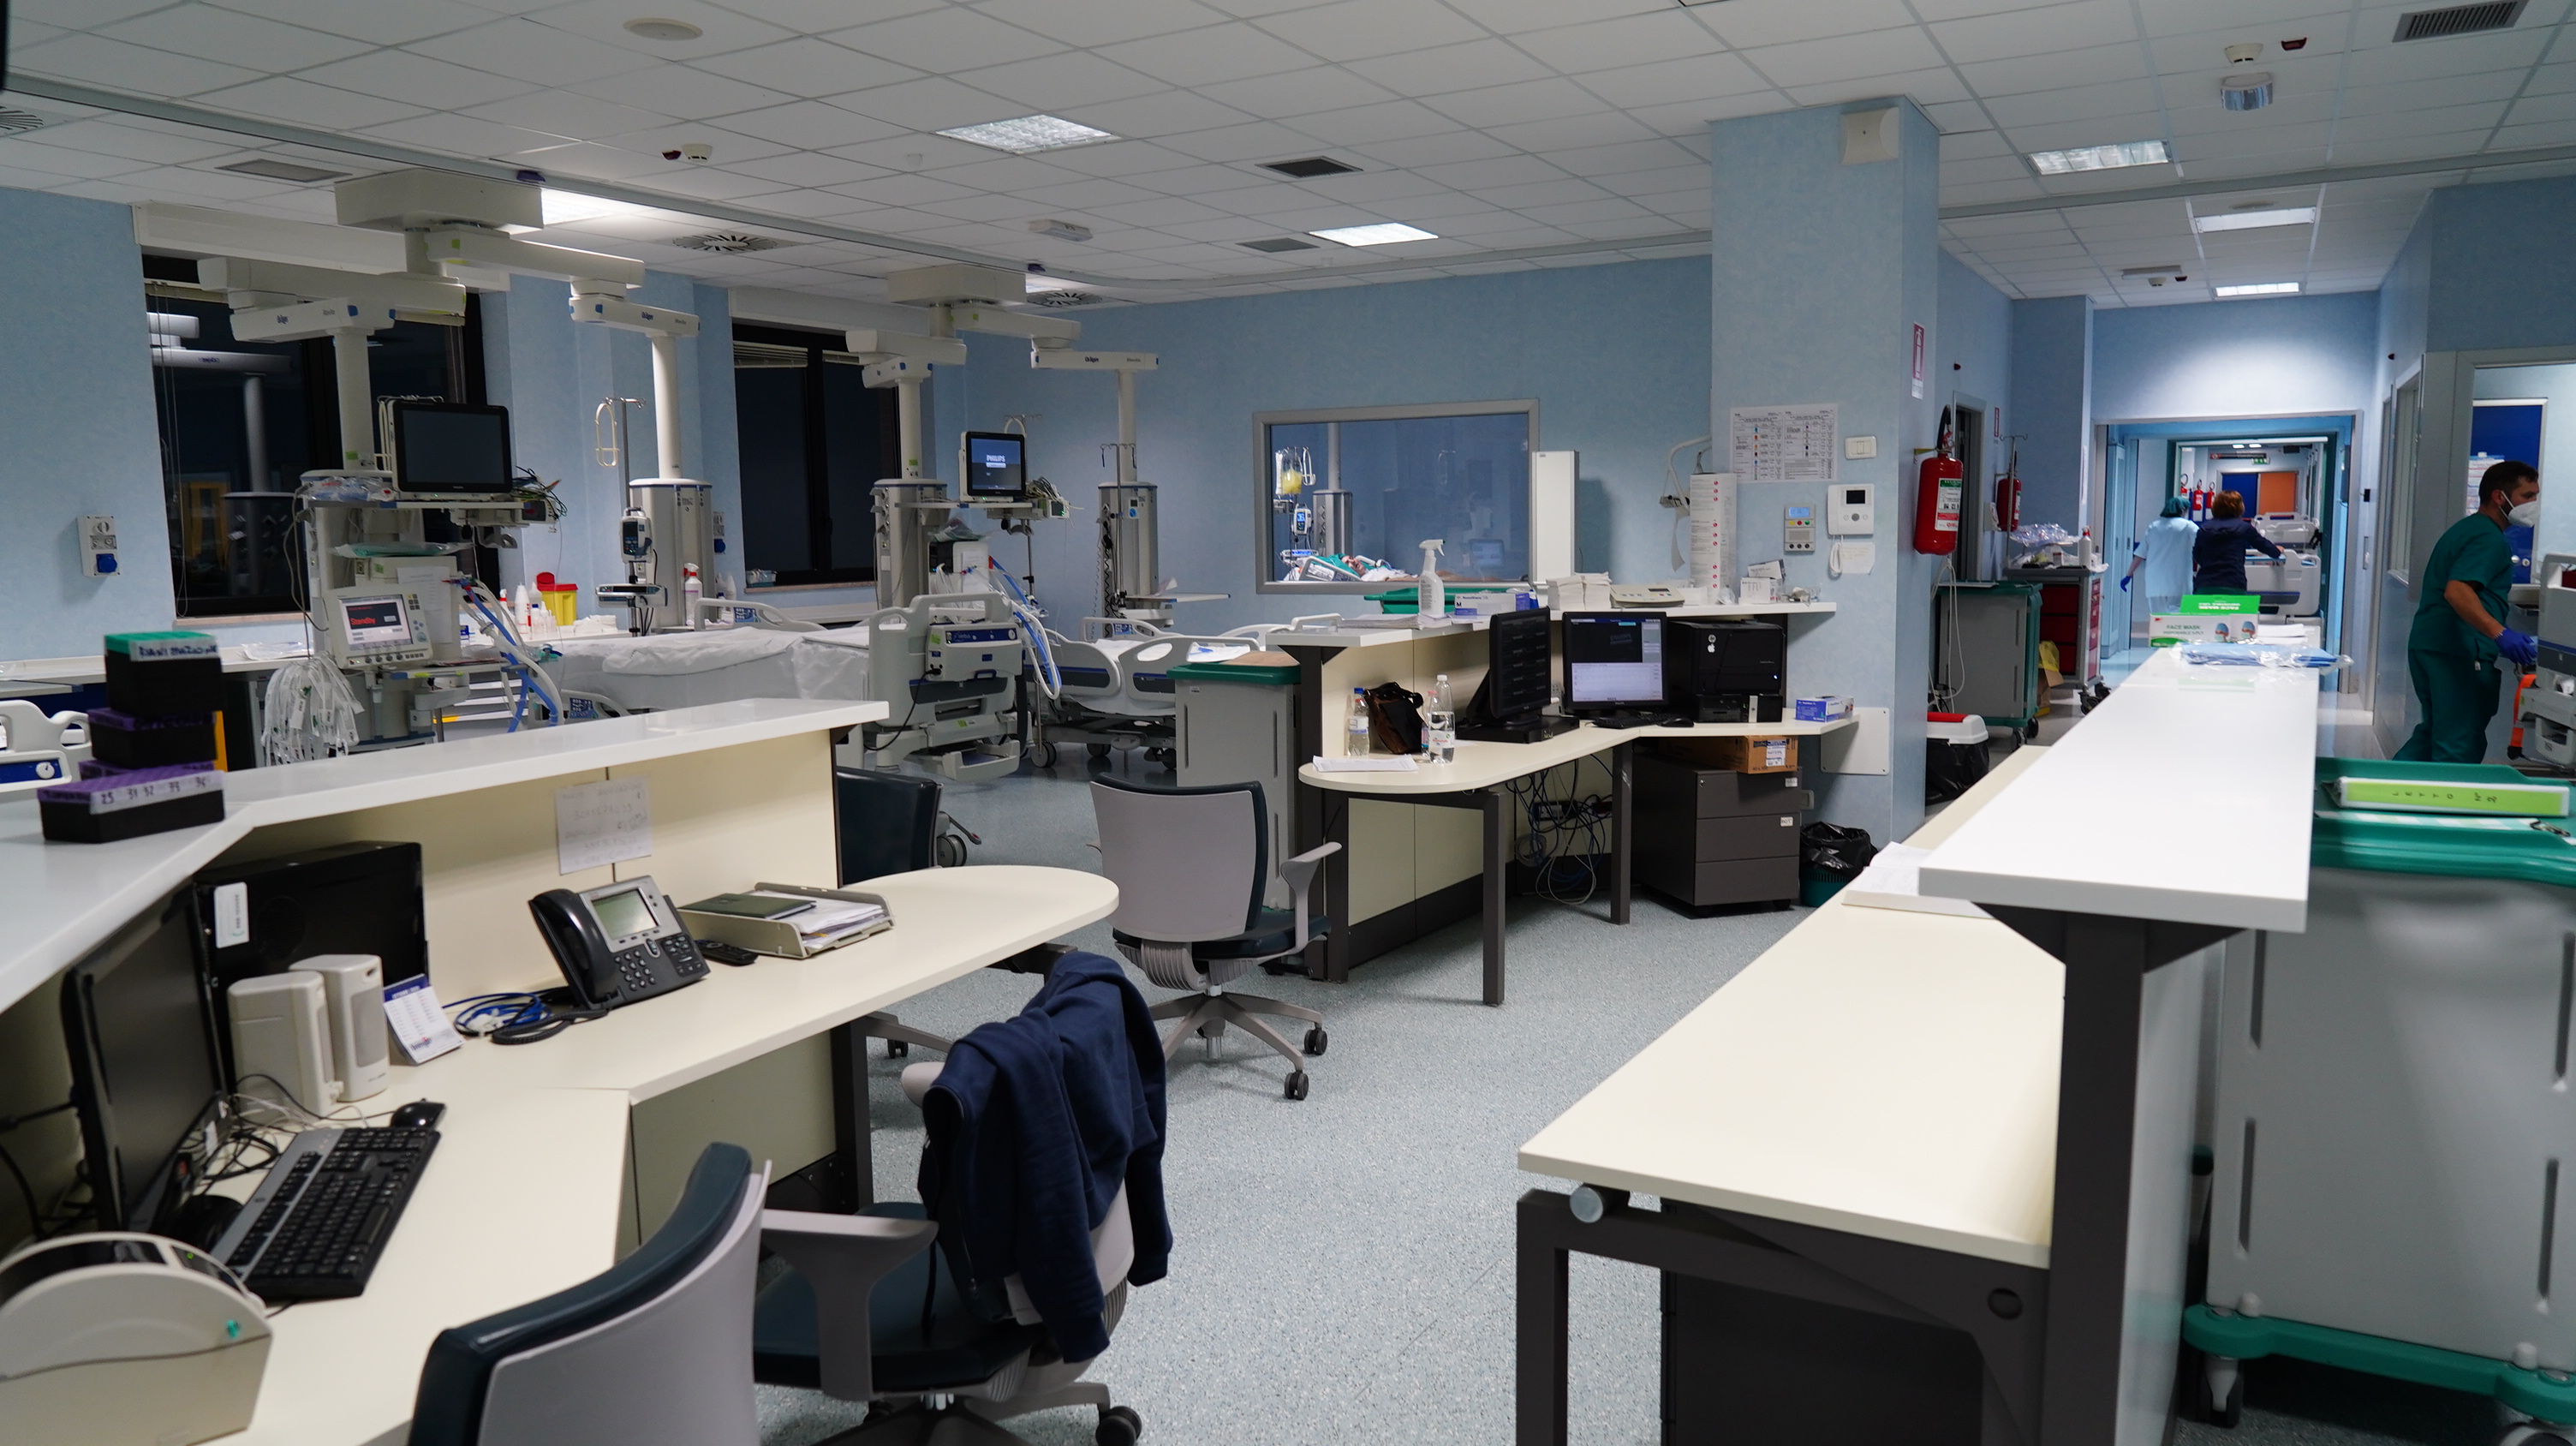 Galleria Apre il reparto Covid dell'Ospedale di Altamura: attivati 20 posti letto, ampliabili sino a 60 - Diapositiva 4 di 9